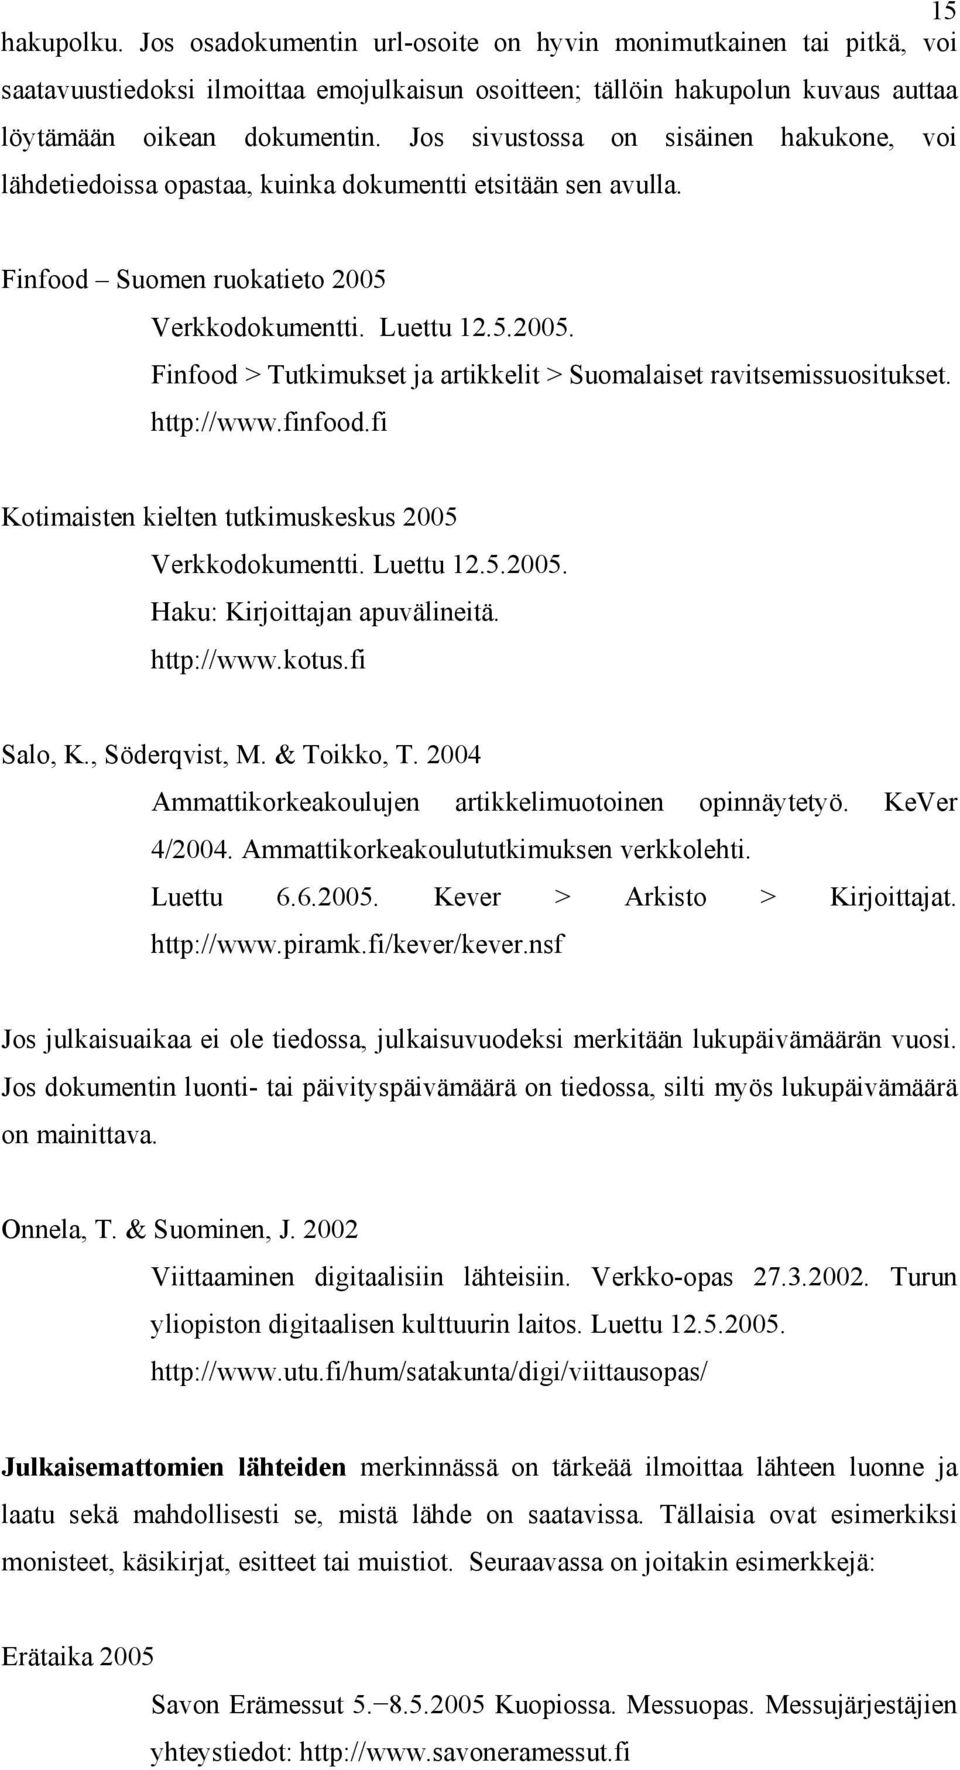 Verkkodokumentti. Luettu 12.5.2005. Finfood > Tutkimukset ja artikkelit > Suomalaiset ravitsemissuositukset. http://www.finfood.fi Kotimaisten kielten tutkimuskeskus 2005 Verkkodokumentti. Luettu 12.5.2005. Haku: Kirjoittajan apuvälineitä.